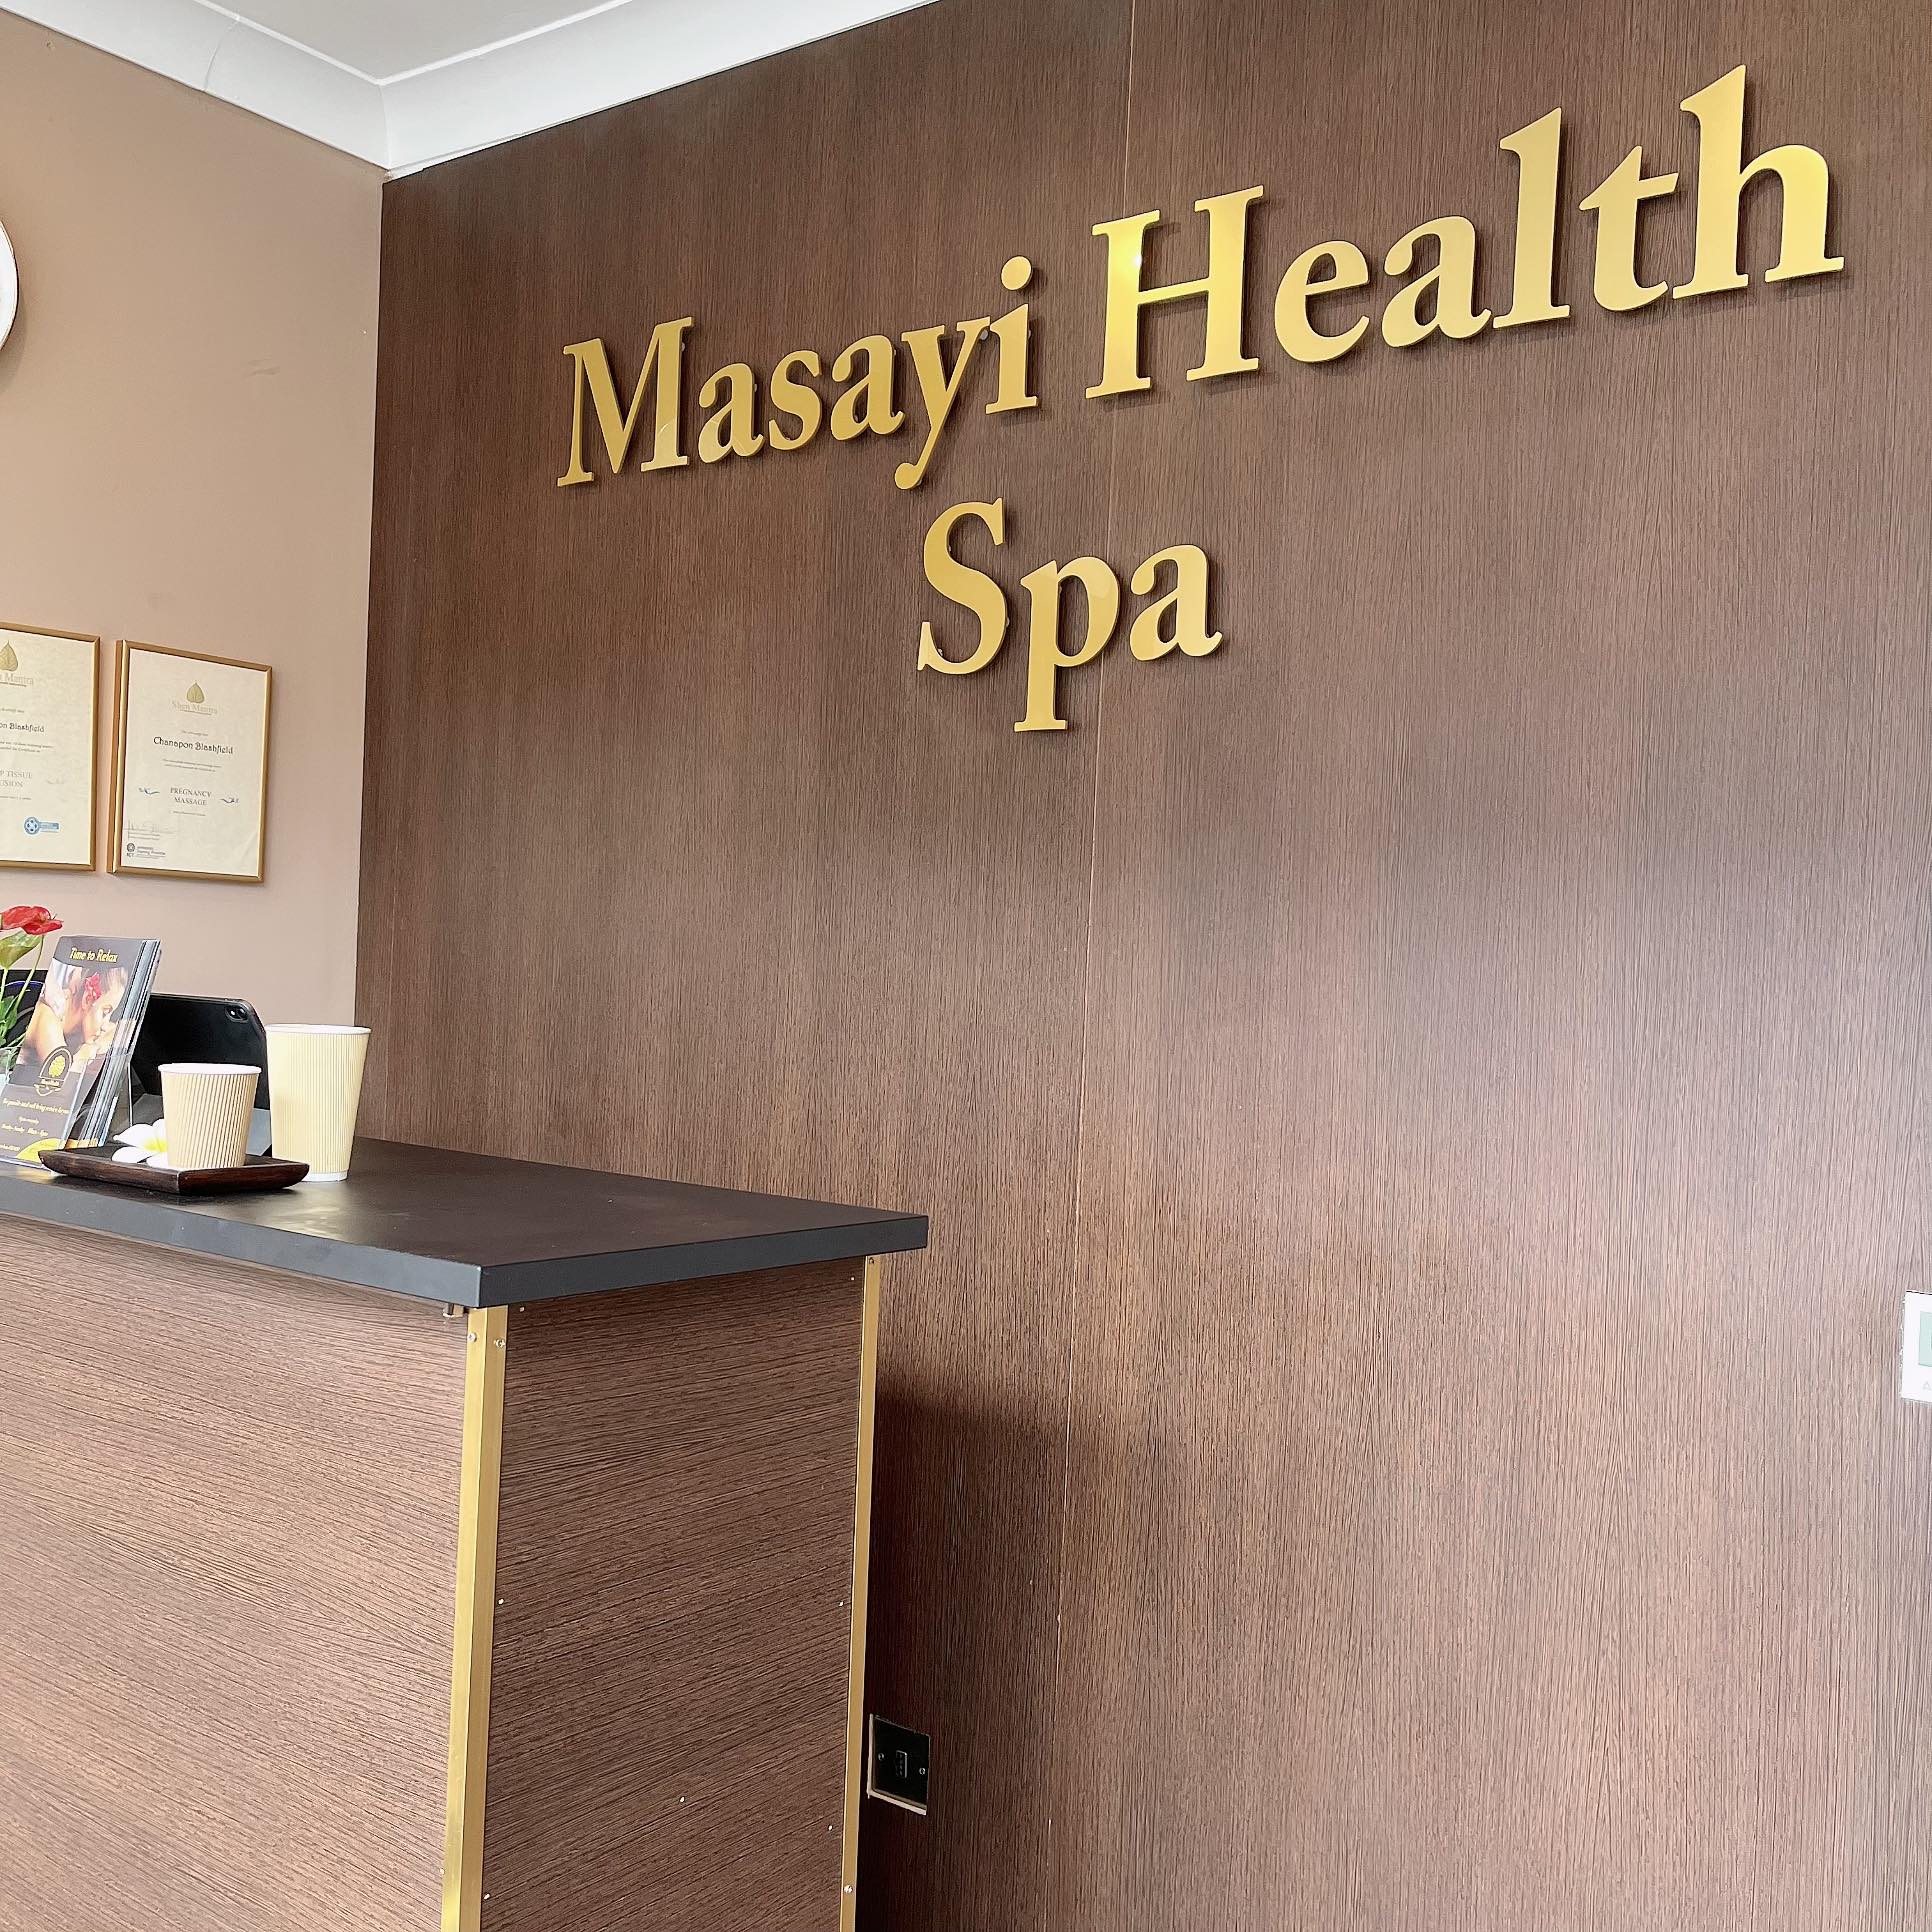 Masayi Health Spa